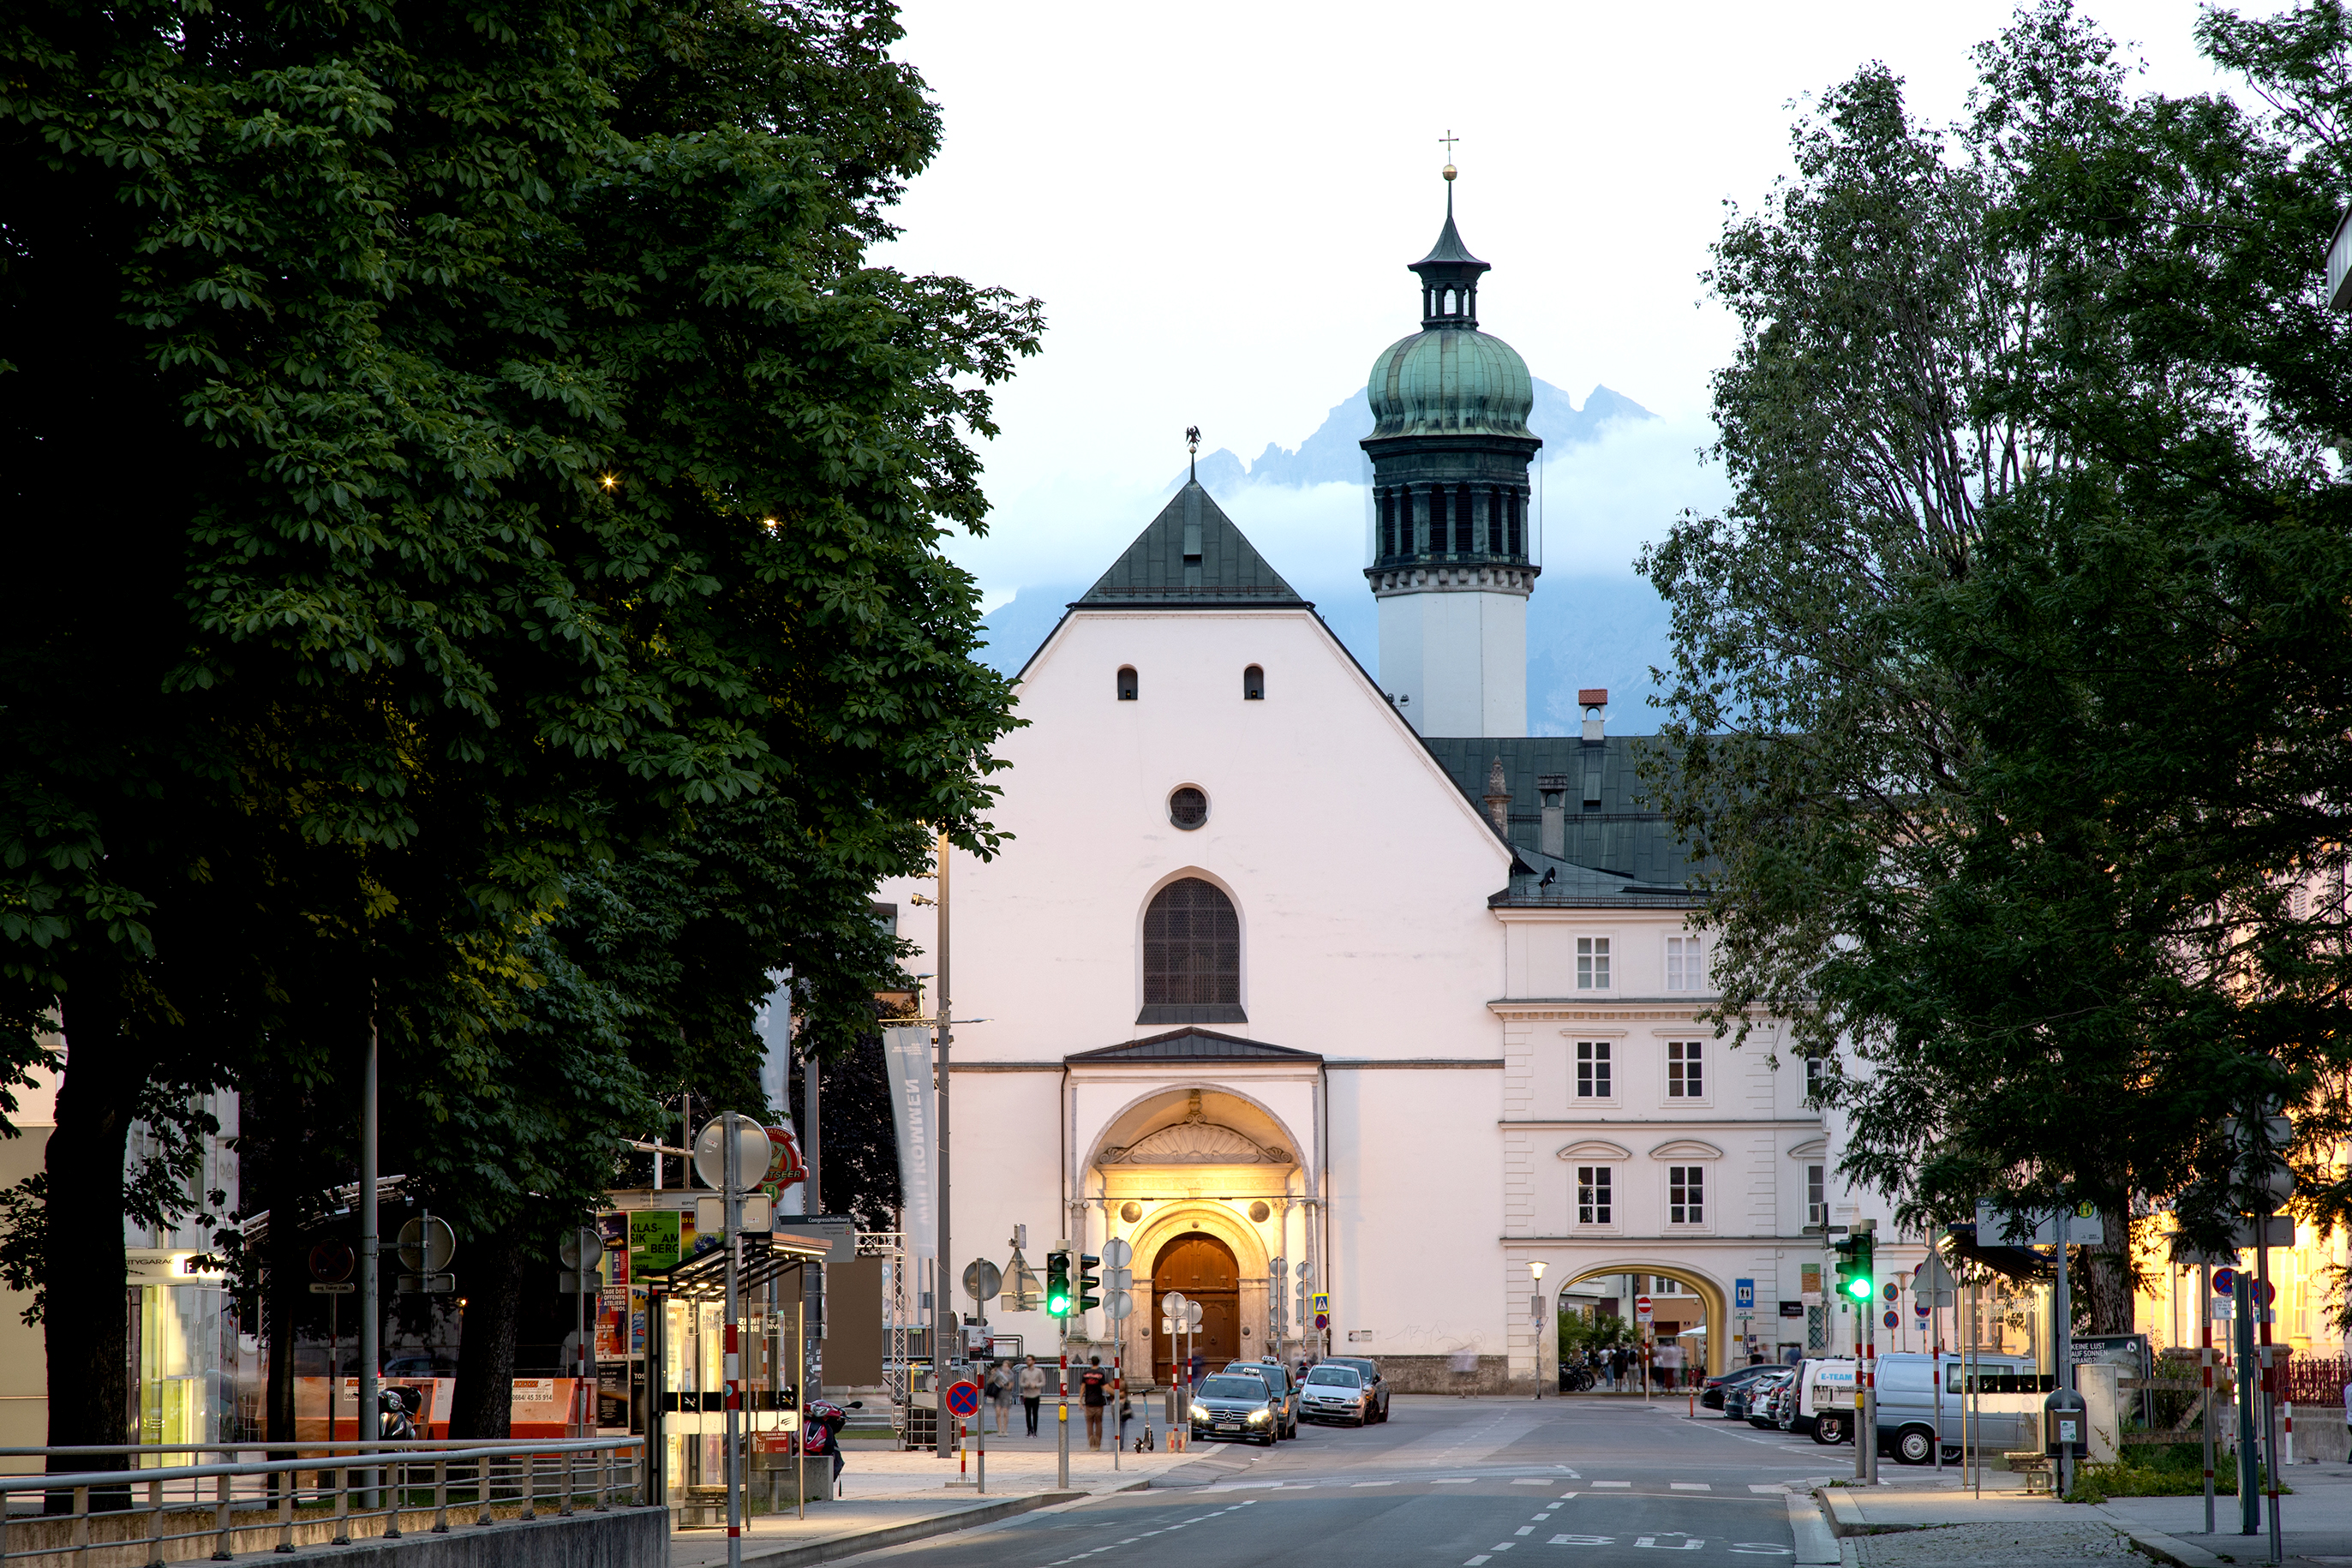 Blick auf die Hofkirche Innsbruck entlang der dorthin führenden Straße. Auf dem Foto ist die Kirche von den auf den beiden Straßenseiten stehenden Bäumen eingerahmt.